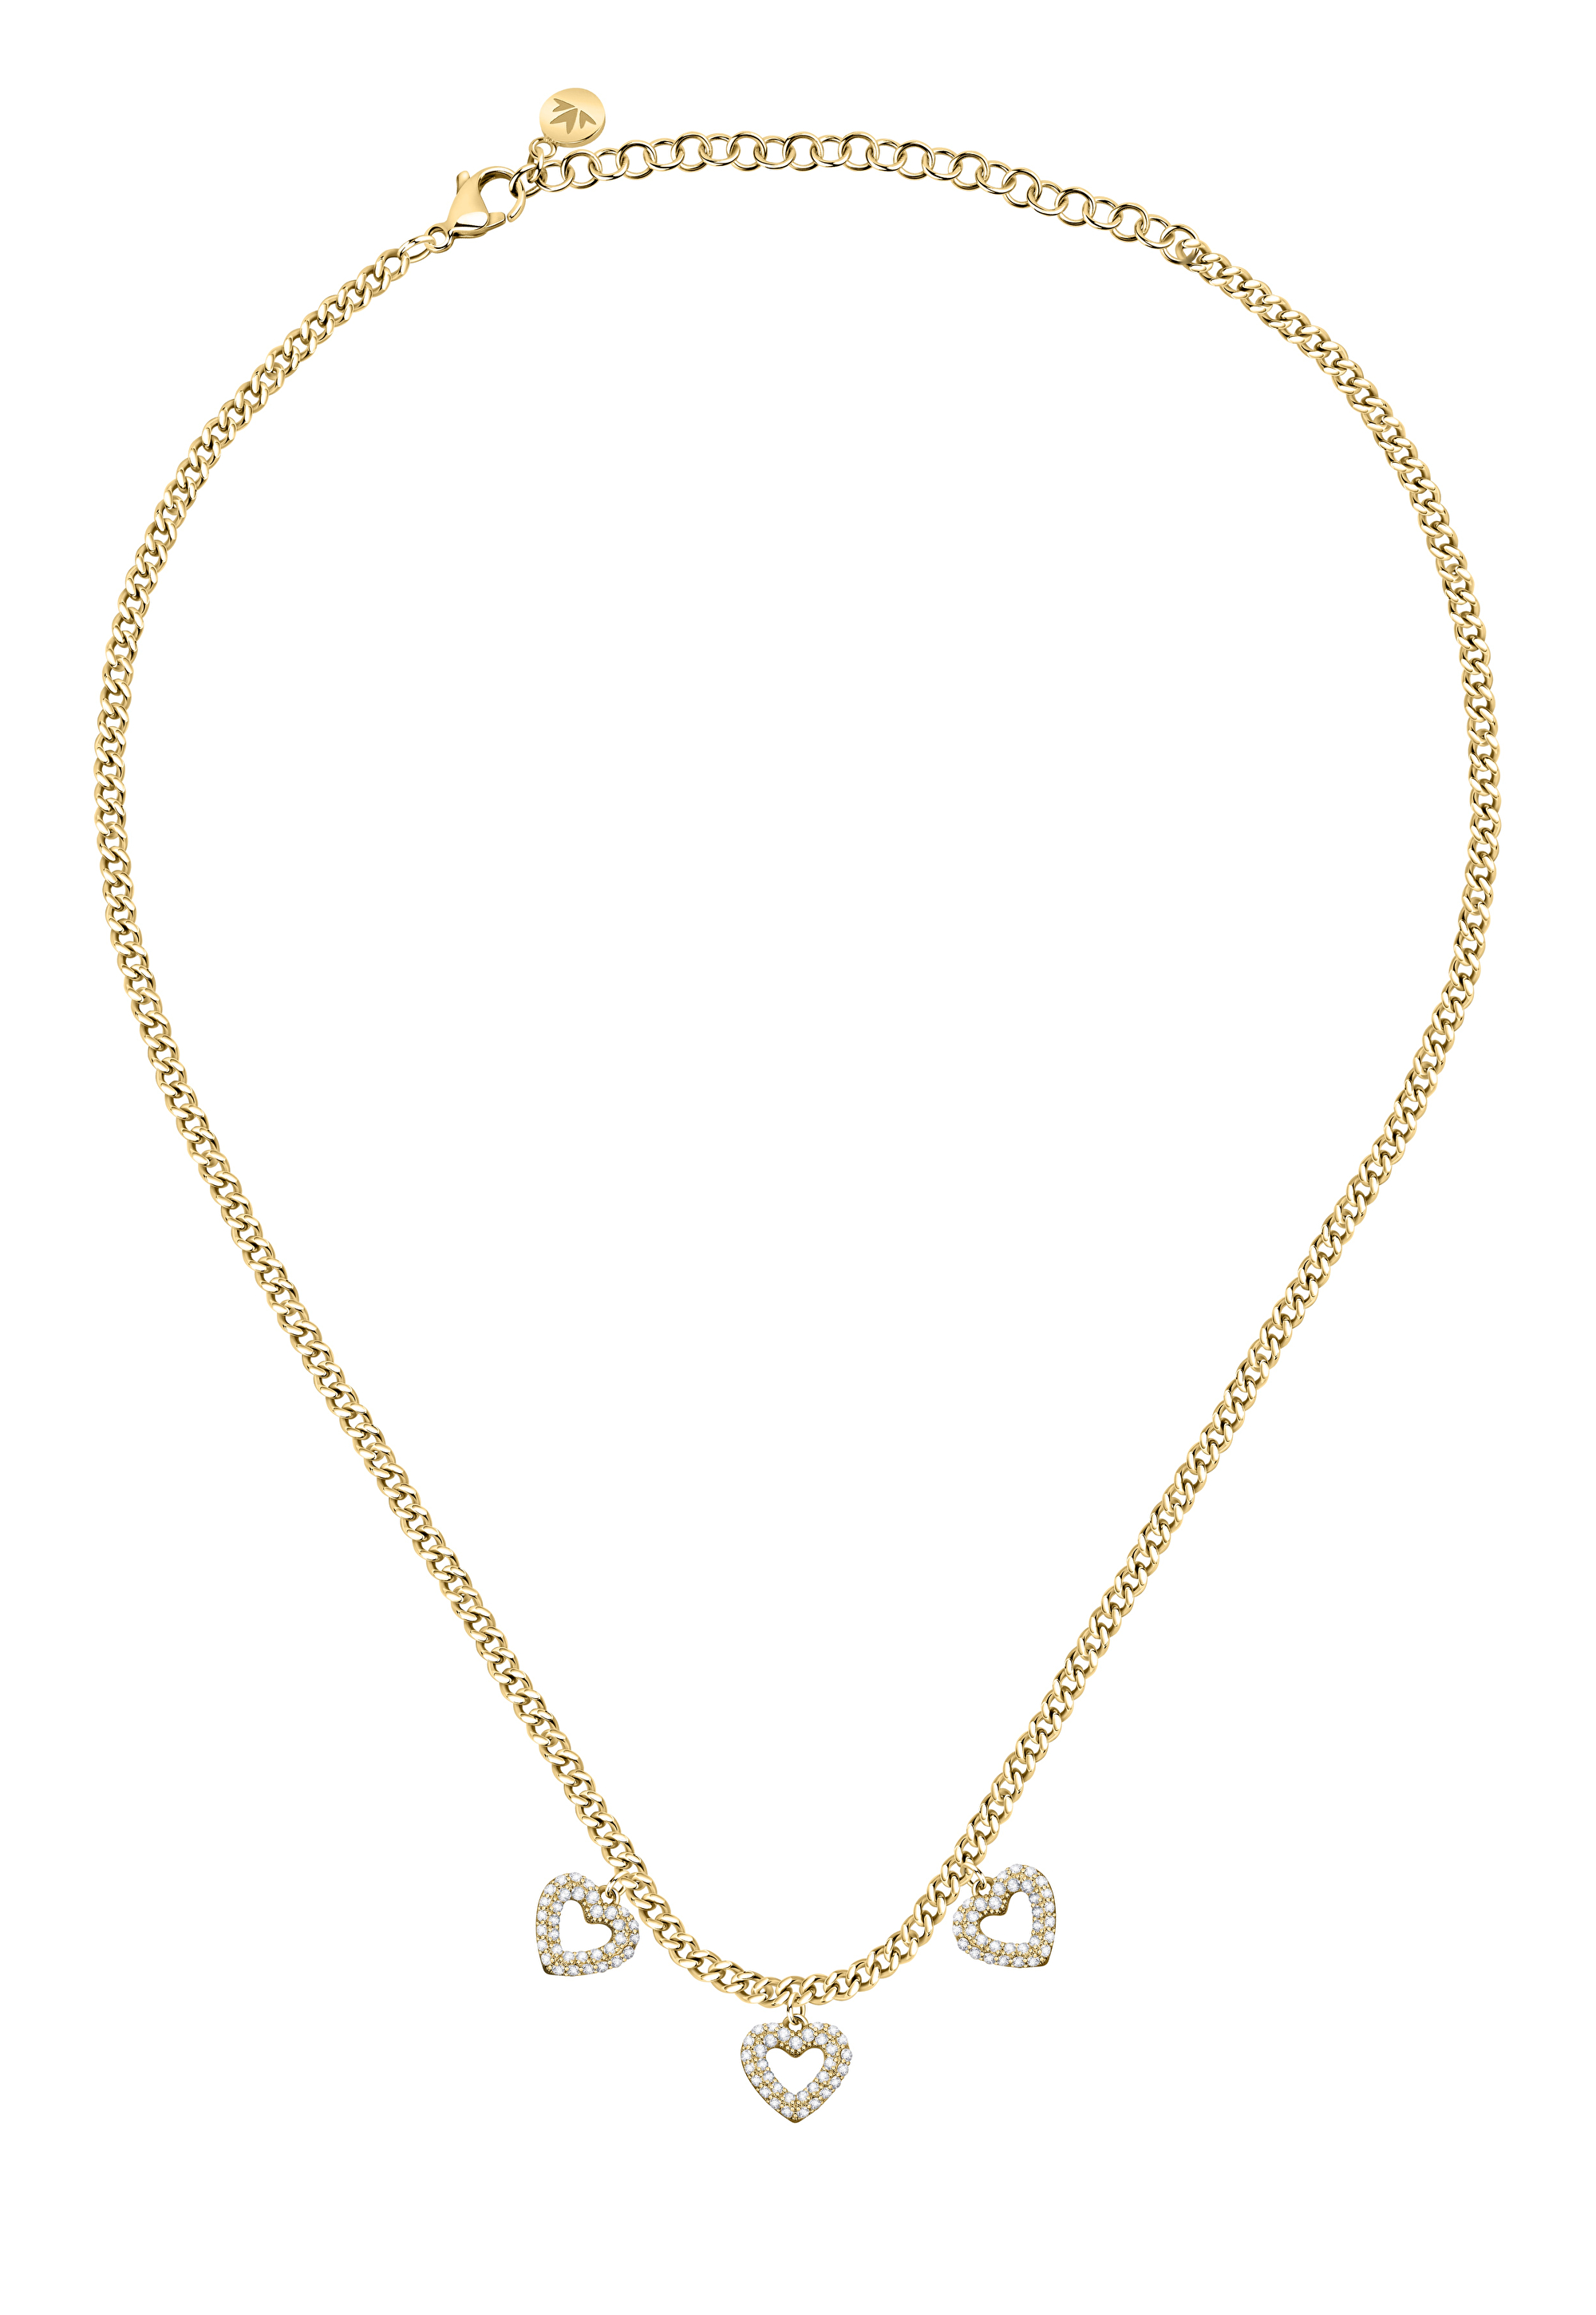 Morellato Romantický pozlacený náhrdelník s krystaly Incontri SAUQ12